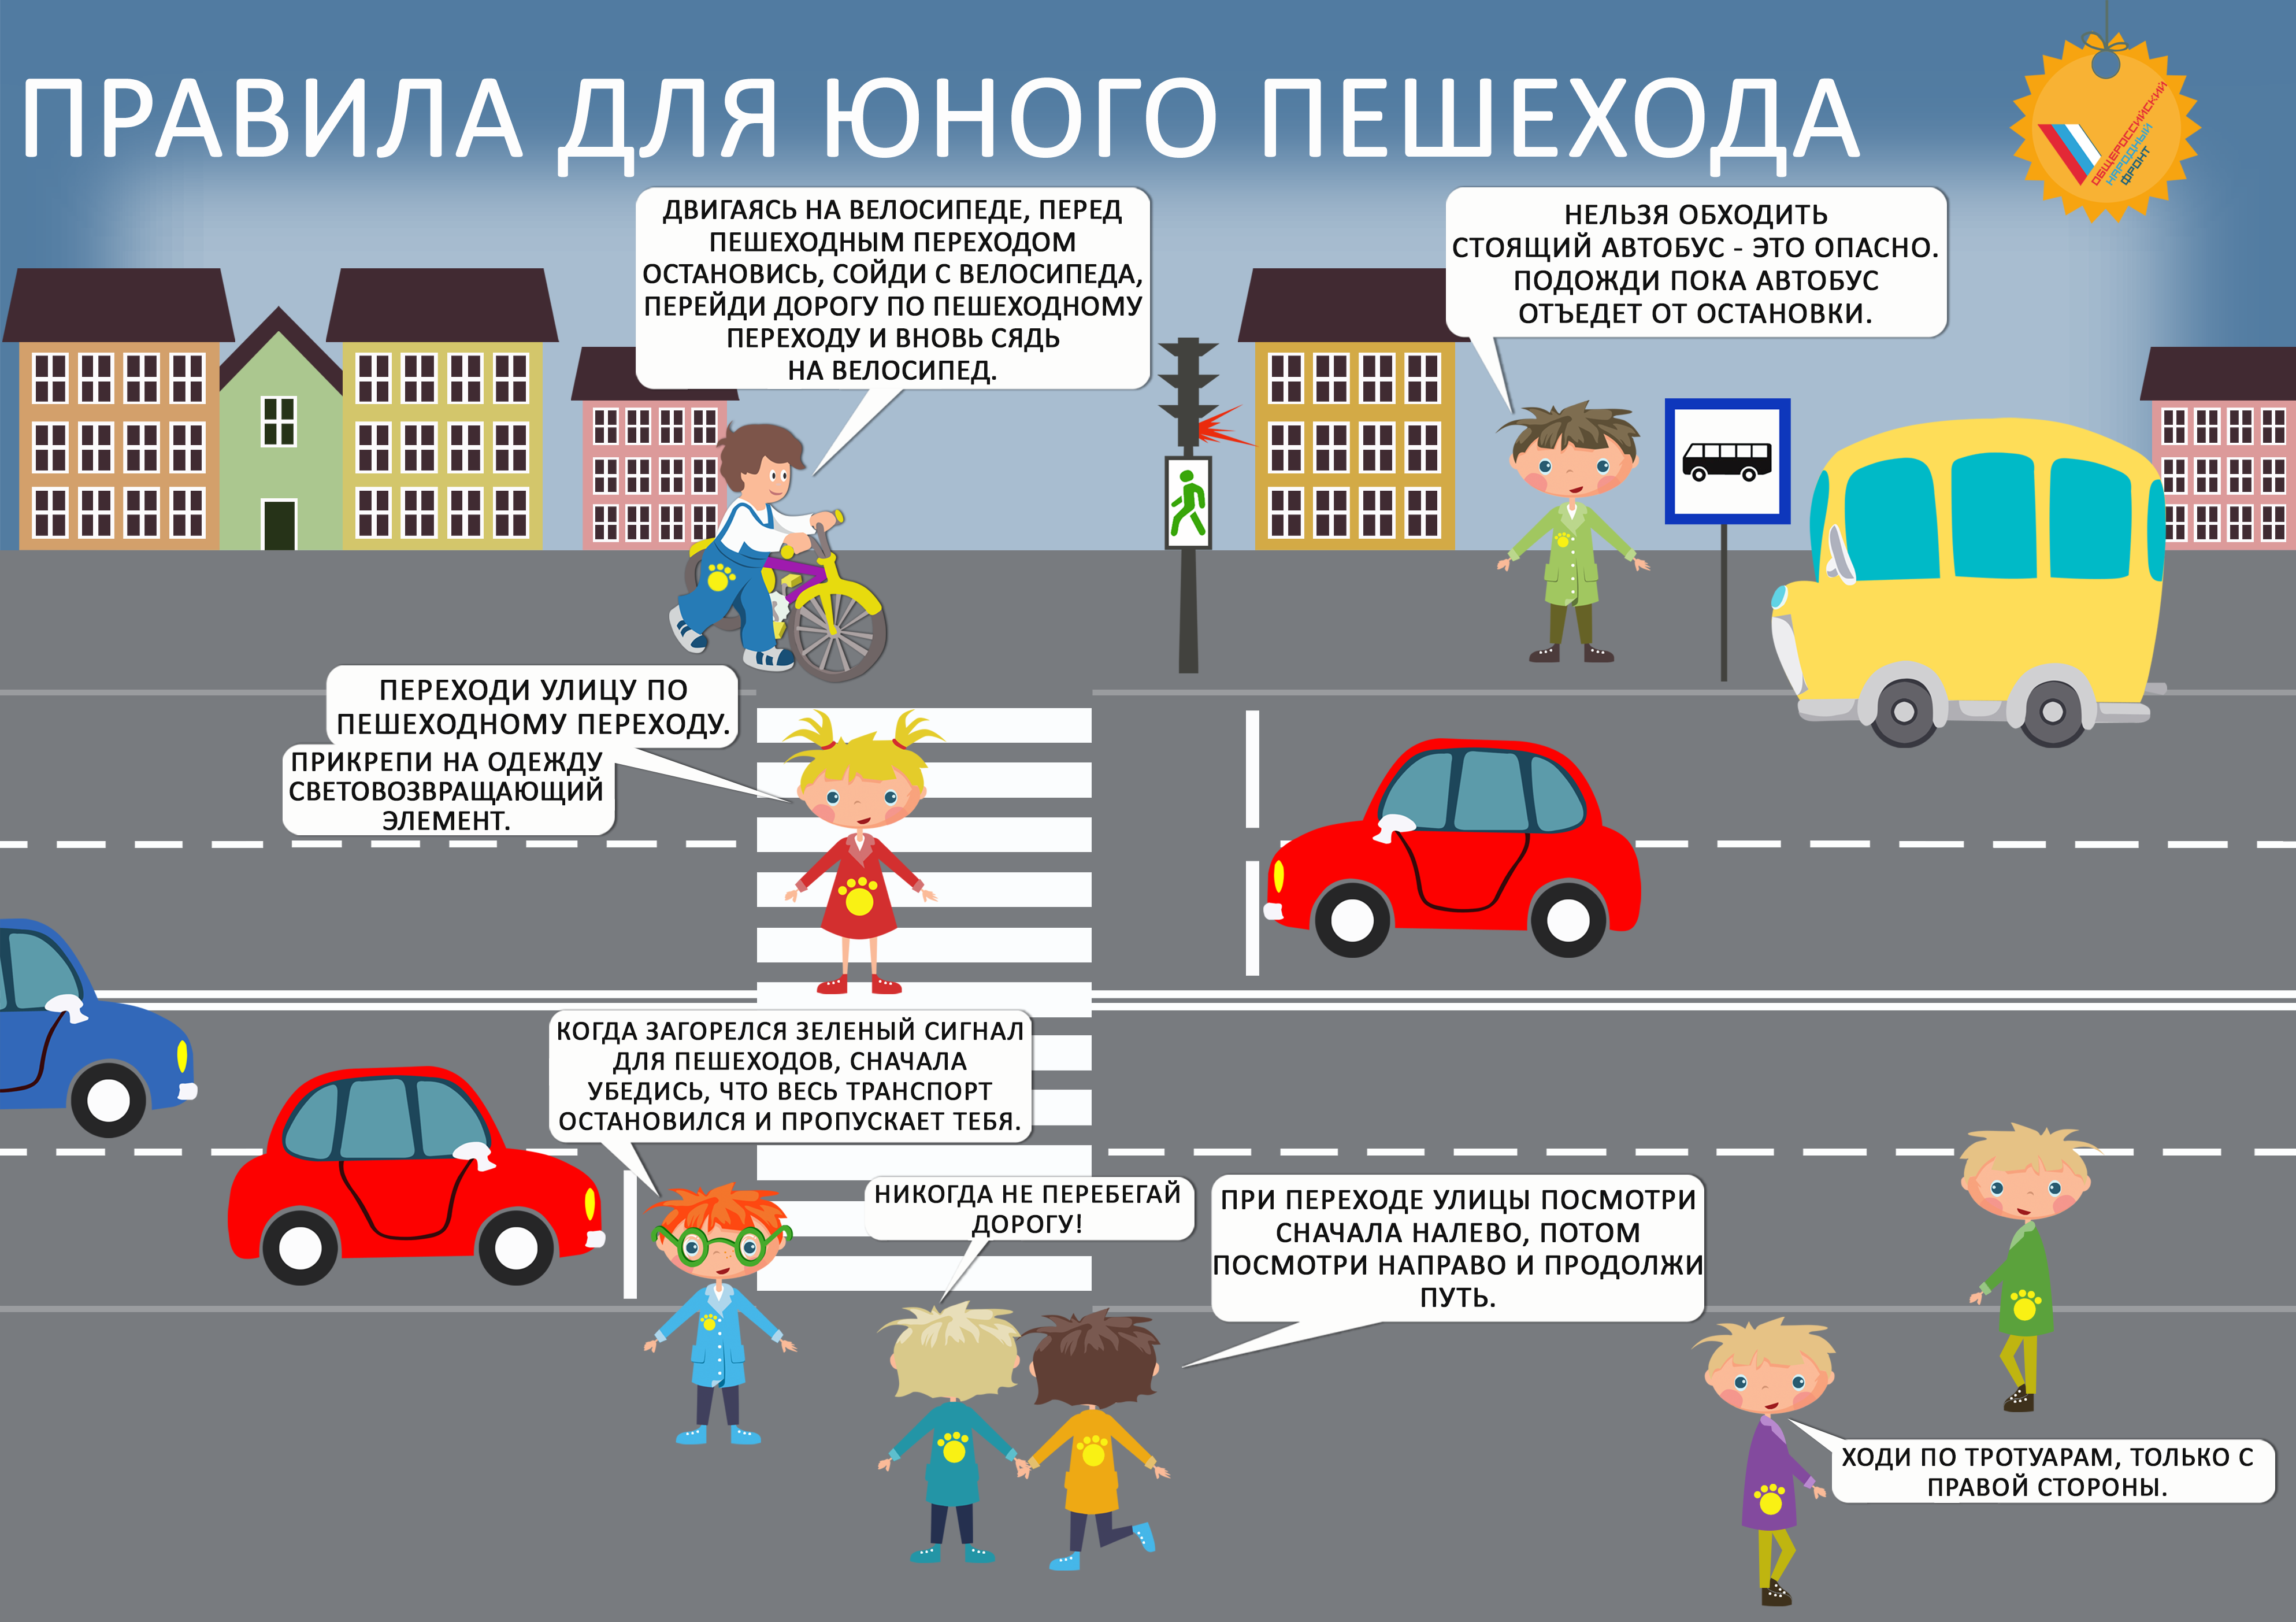 Новые правила пешеходы. Правила дорожного движения для детей. Правила дорожного движения для пешеходов. Правила дорожного движения для пешеходов для детей. Правило дорожного движения для детей.